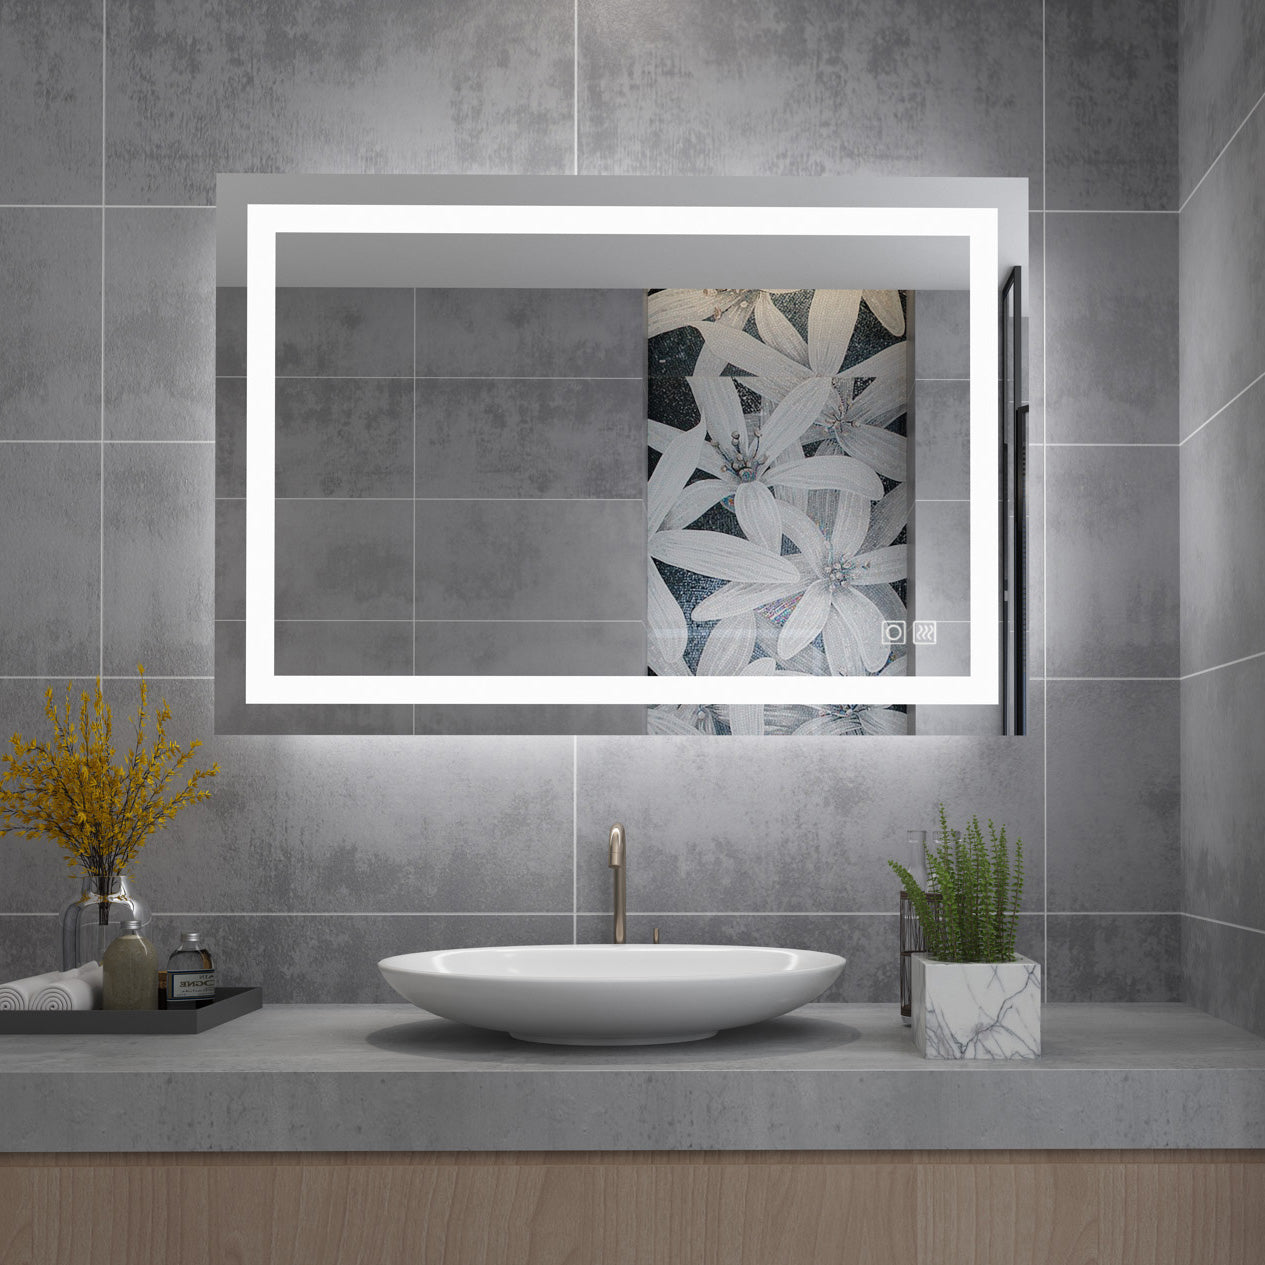 LM24 Badspiegel mit Beleuchtung, Wandspiegel, horizontal aufgehängt, mit  goldenem Aluminiumrahmen